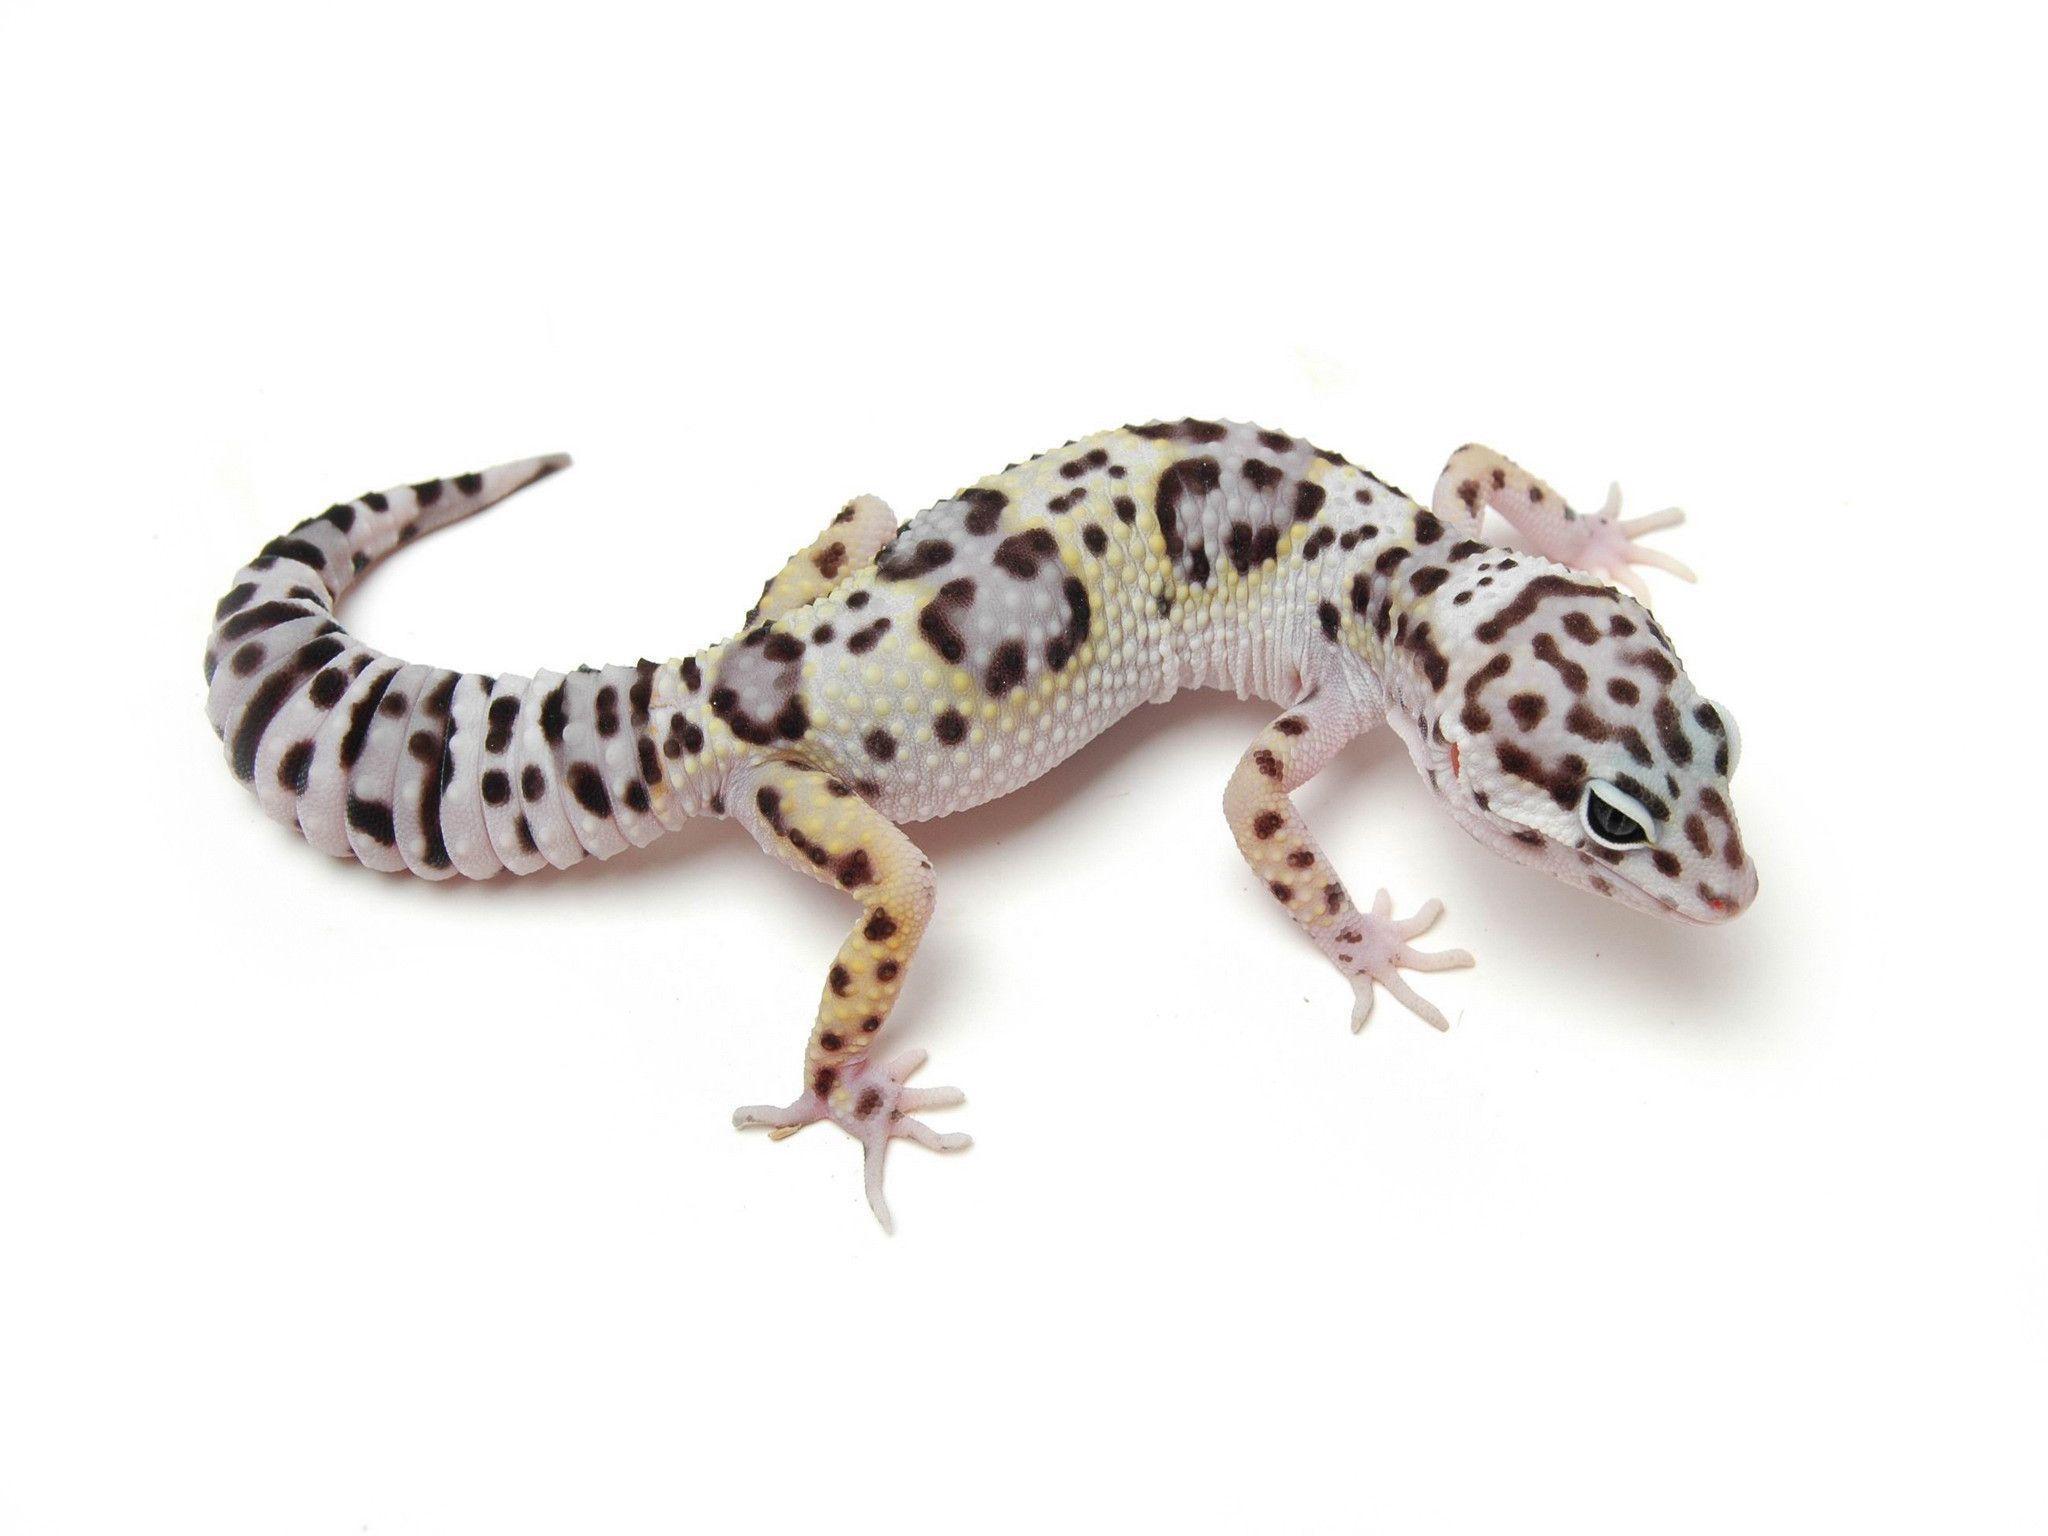 Leopard Gecko Wallpaper 111445 High Definition Wallpaper. Suwall